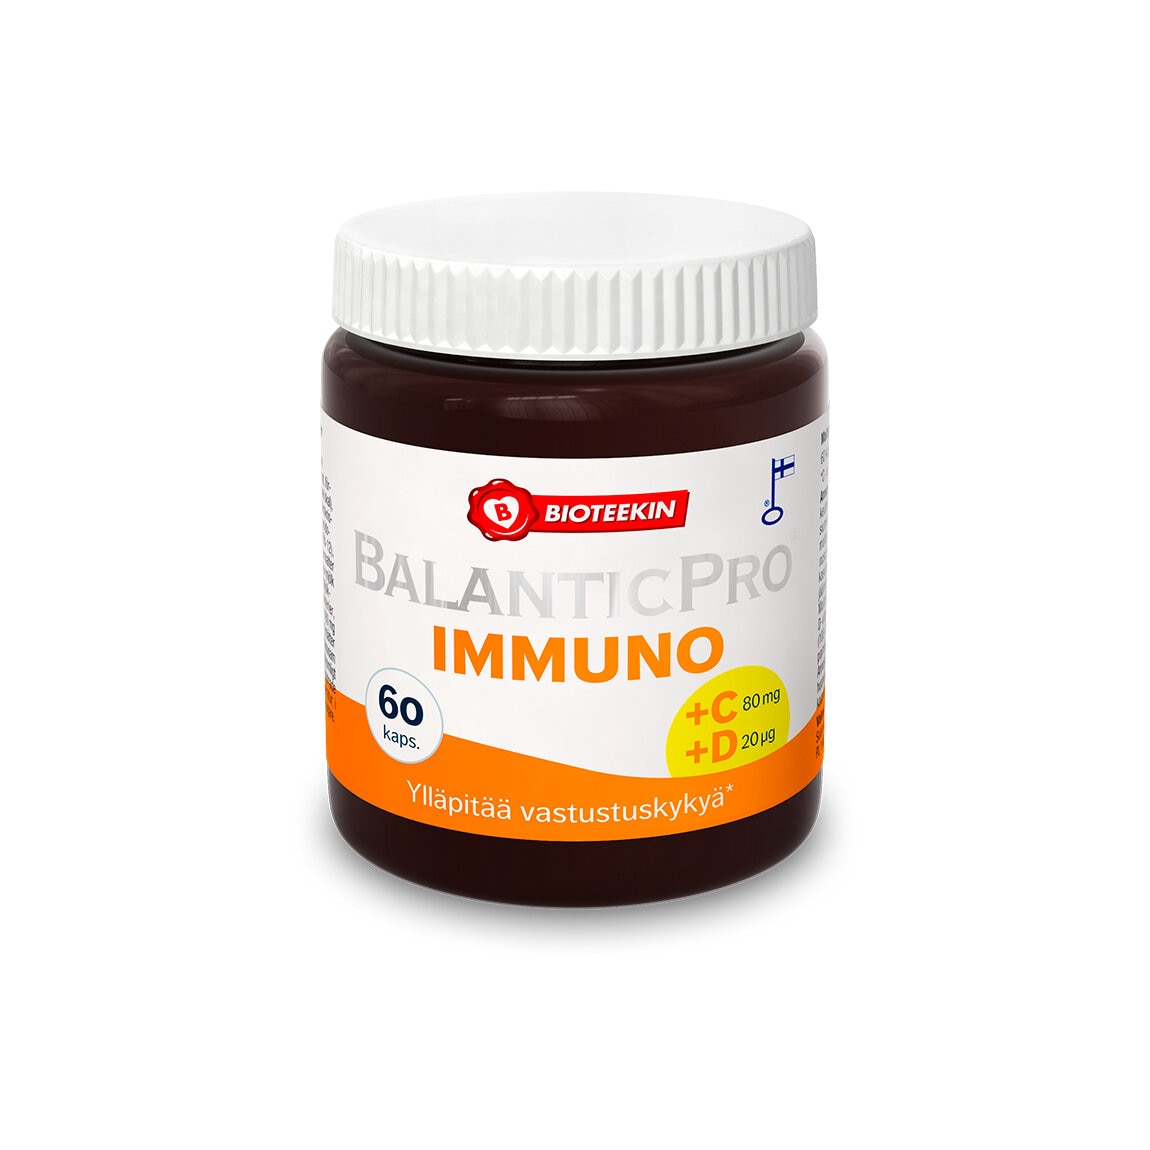 BalanticPro Immuno